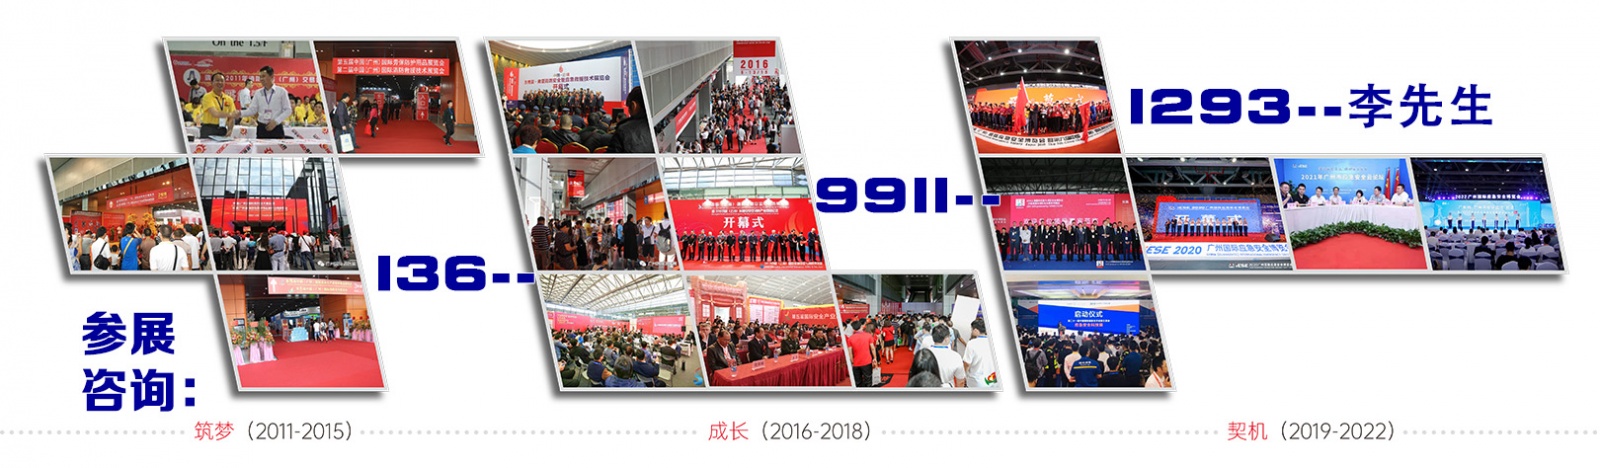 2024第十三届中国广州国际应急安全暨消防博览会